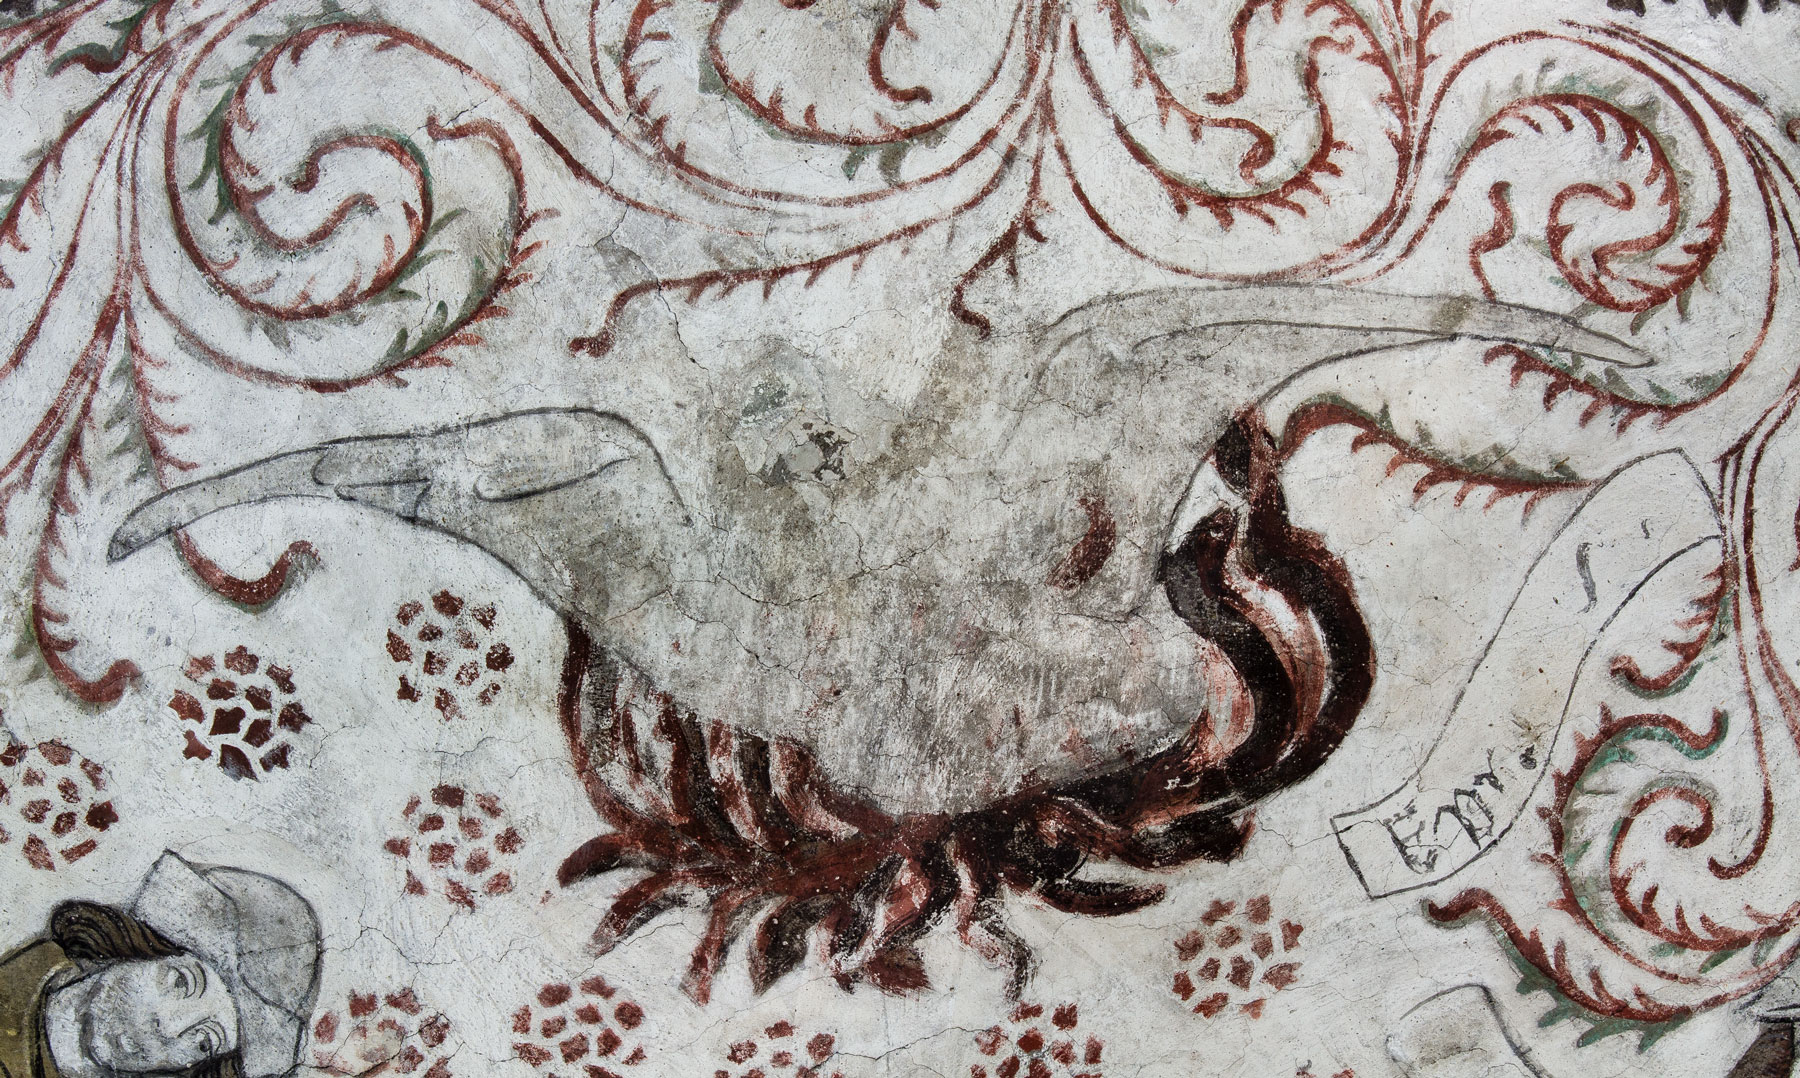 Fågel Fenix i sitt brinnande näste, symbol för Kristi död och uppståndelse, liksom även för bl.a. kyskheten, hoppet och kyrkan - Odensala kyrka